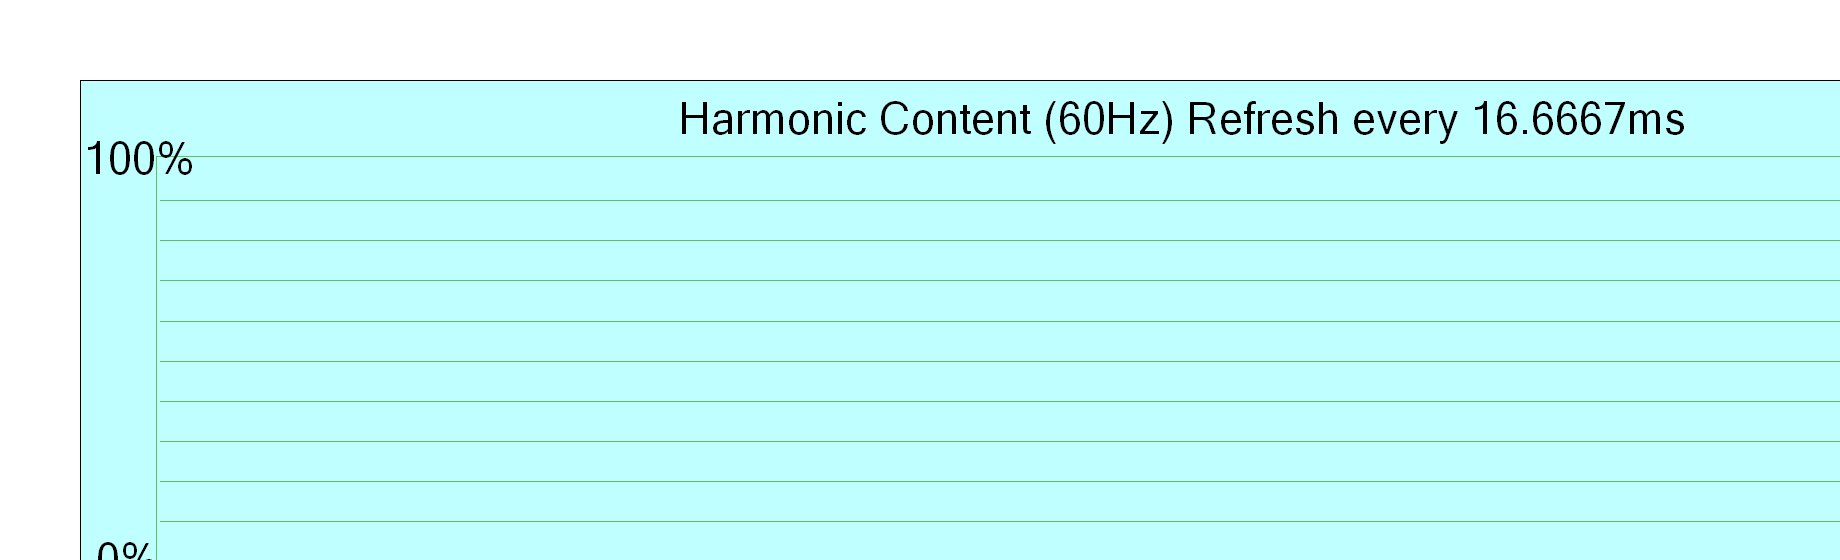 Harmonic content 60Hz